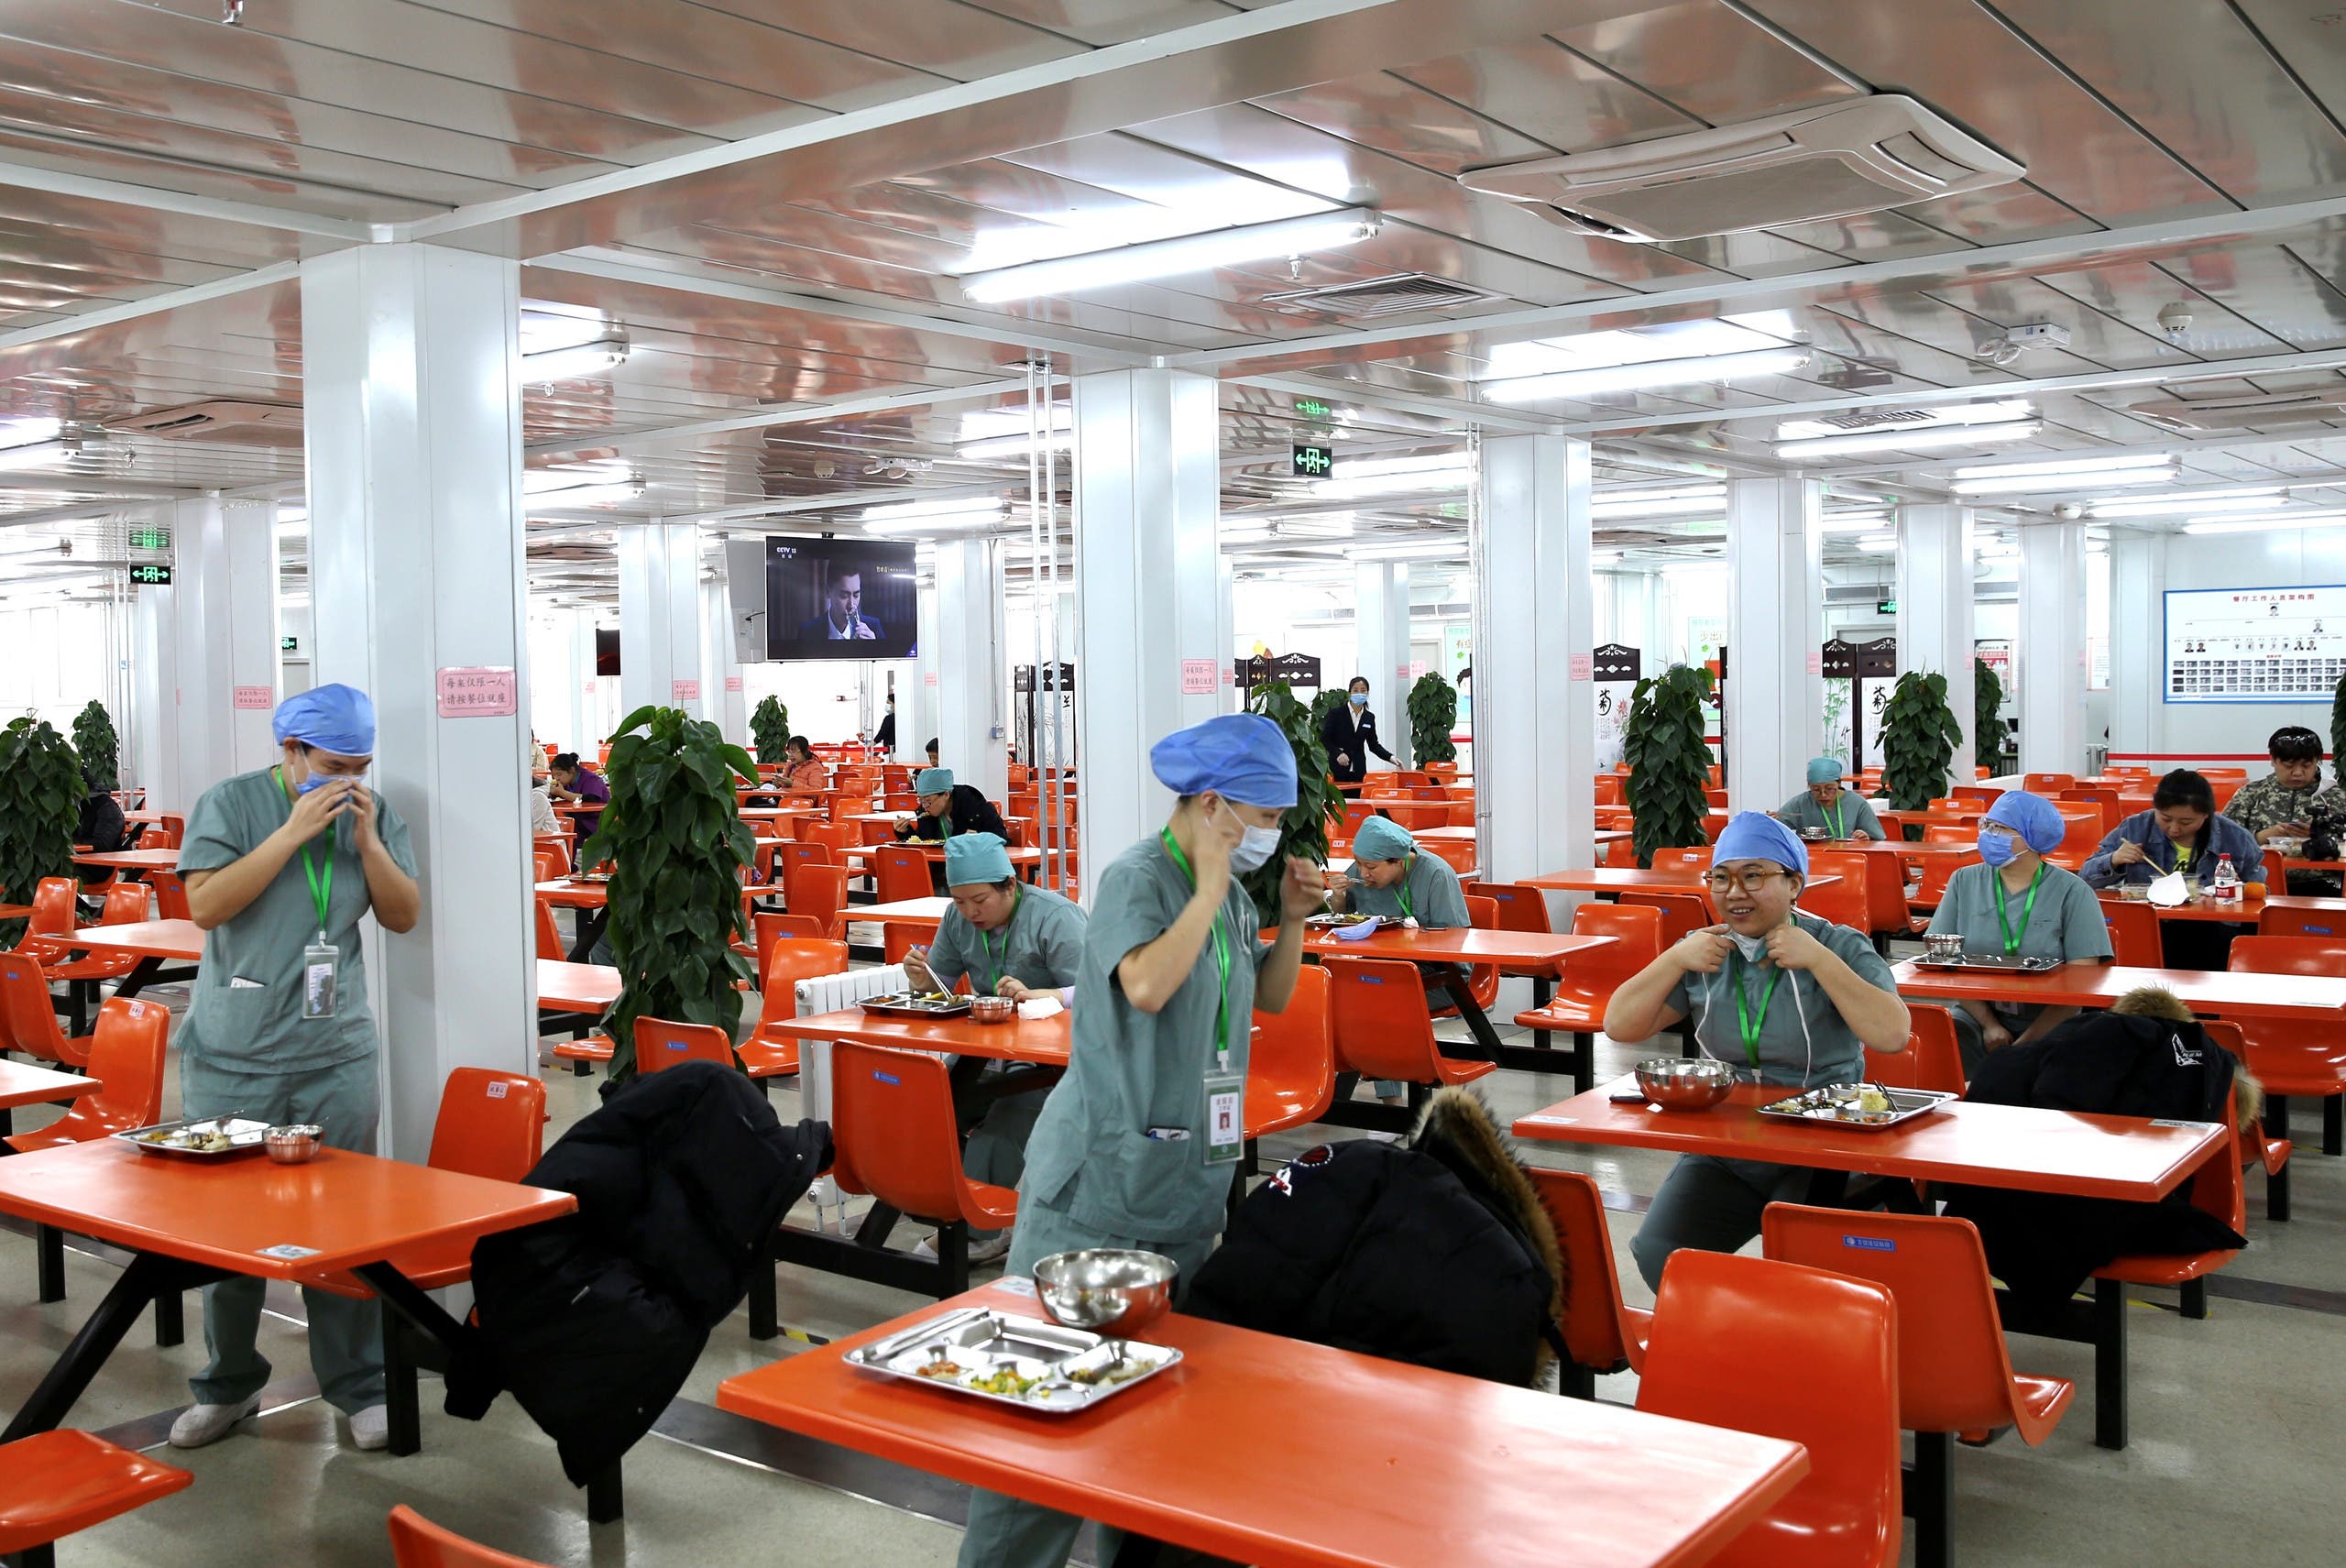 أطباء يتناولون الطعام كل على حدة على طاولات منفردة في أحد مستشفيات بكين